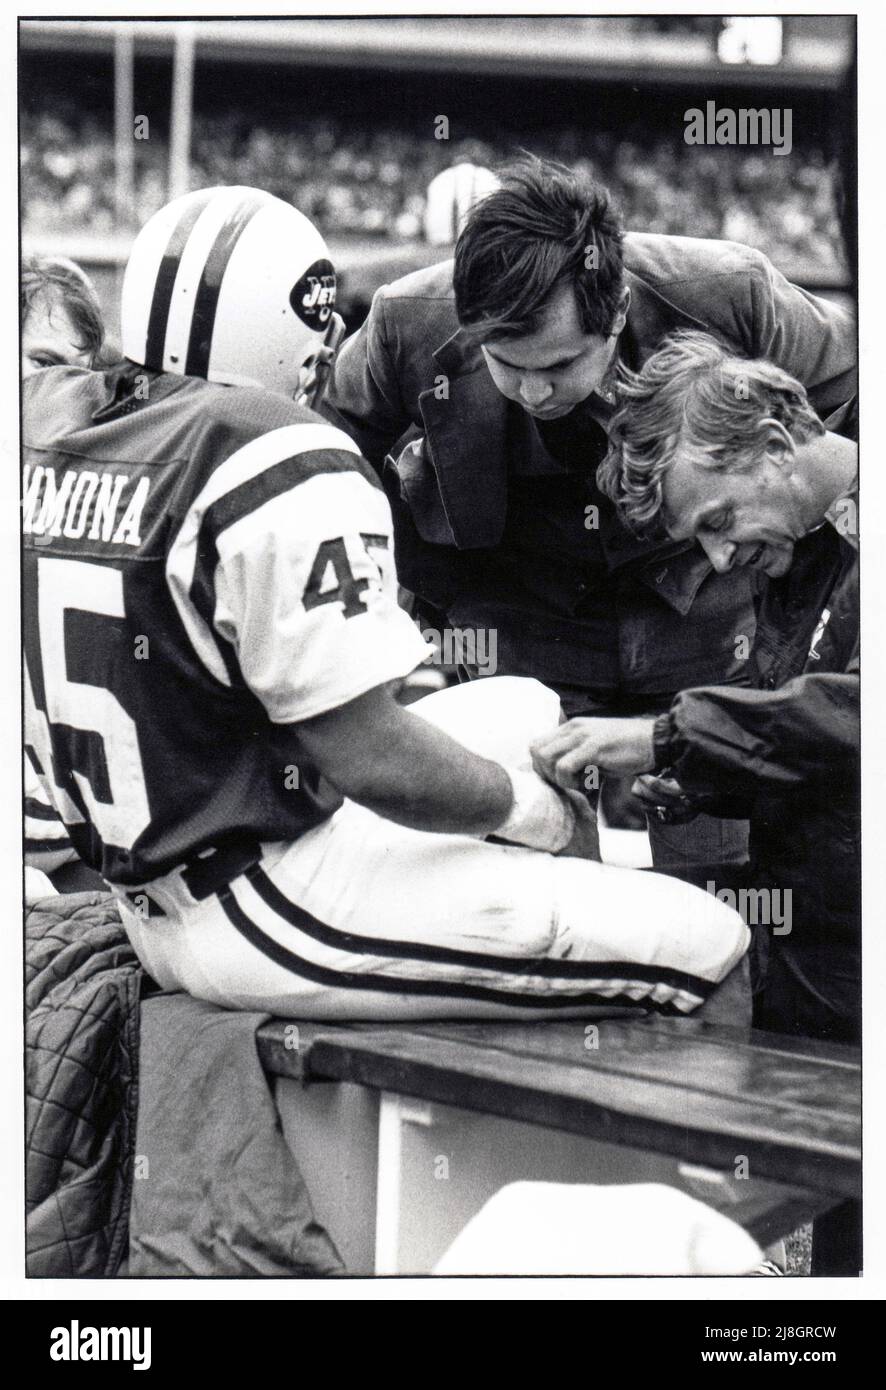 El traumatólogo de los New York Jets, Dr. Robert Grossman, y el entrenador de por largo tiempo, Jeff Snedyker, encinta la muñeca de Lou Giamona corriendo de vuelta al margen de un partido de fútbol de 1976 en el Shea Stadium en la ciudad de Nueva York. Foto de stock